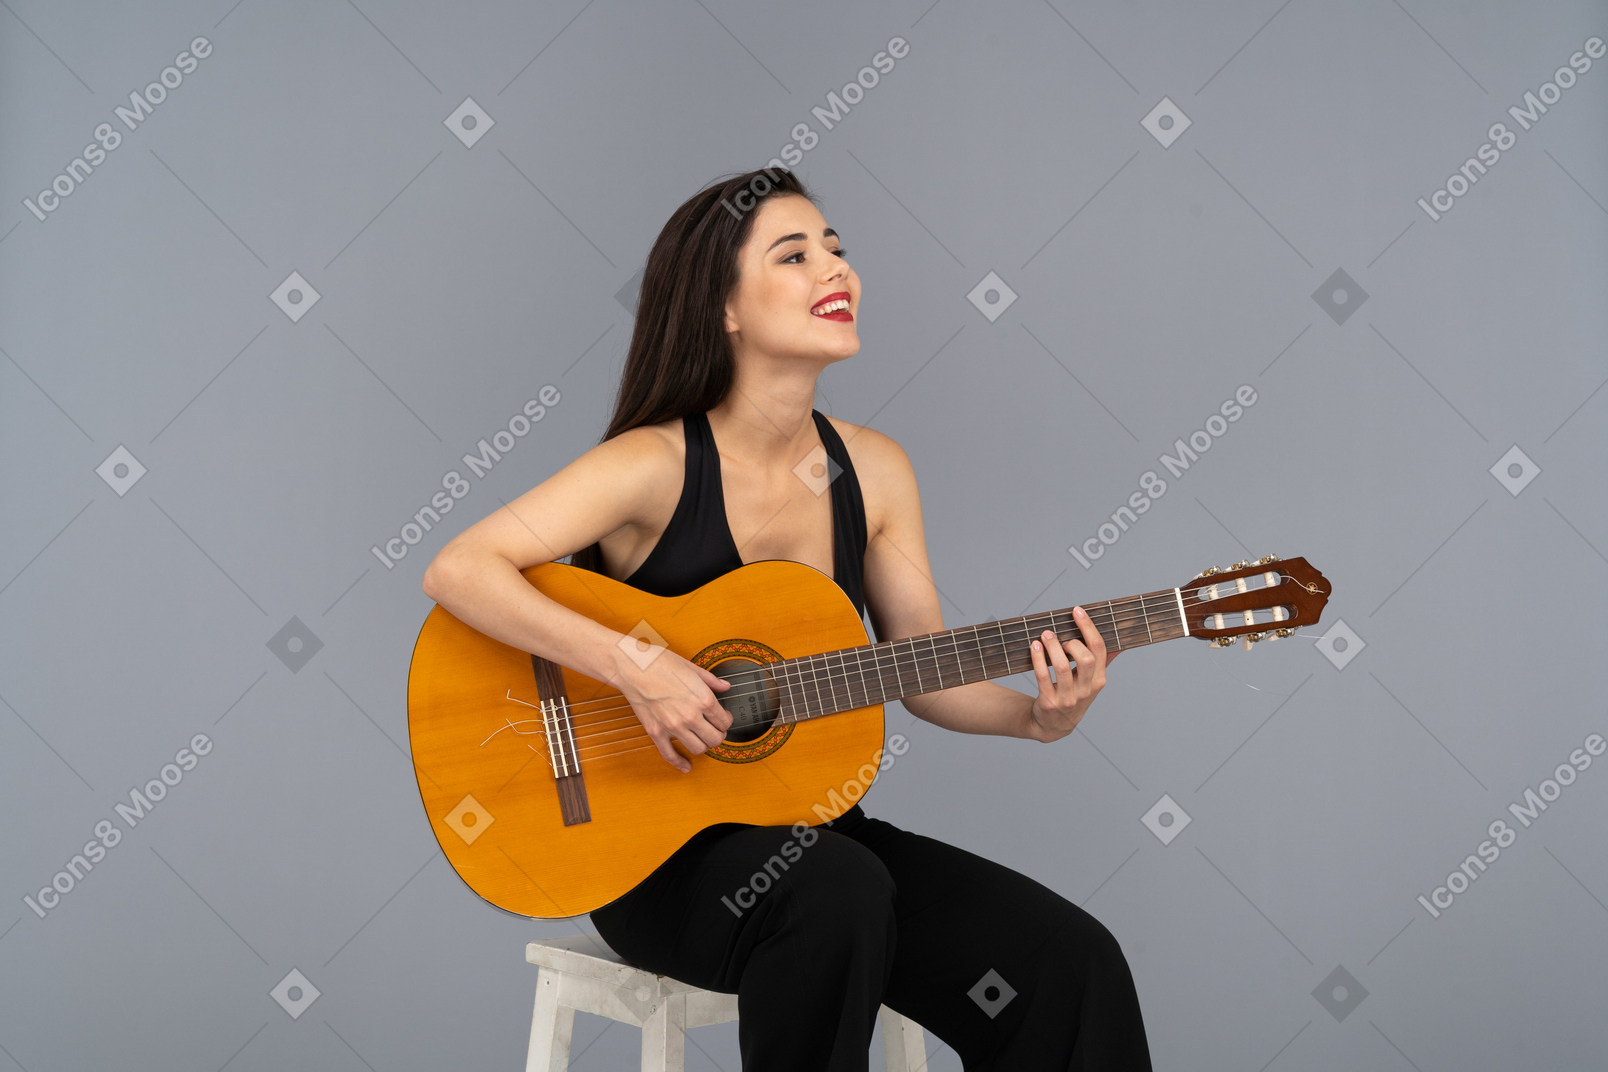 Vista de três quartos de uma jovem sorridente sentada de terno preto tocando violão